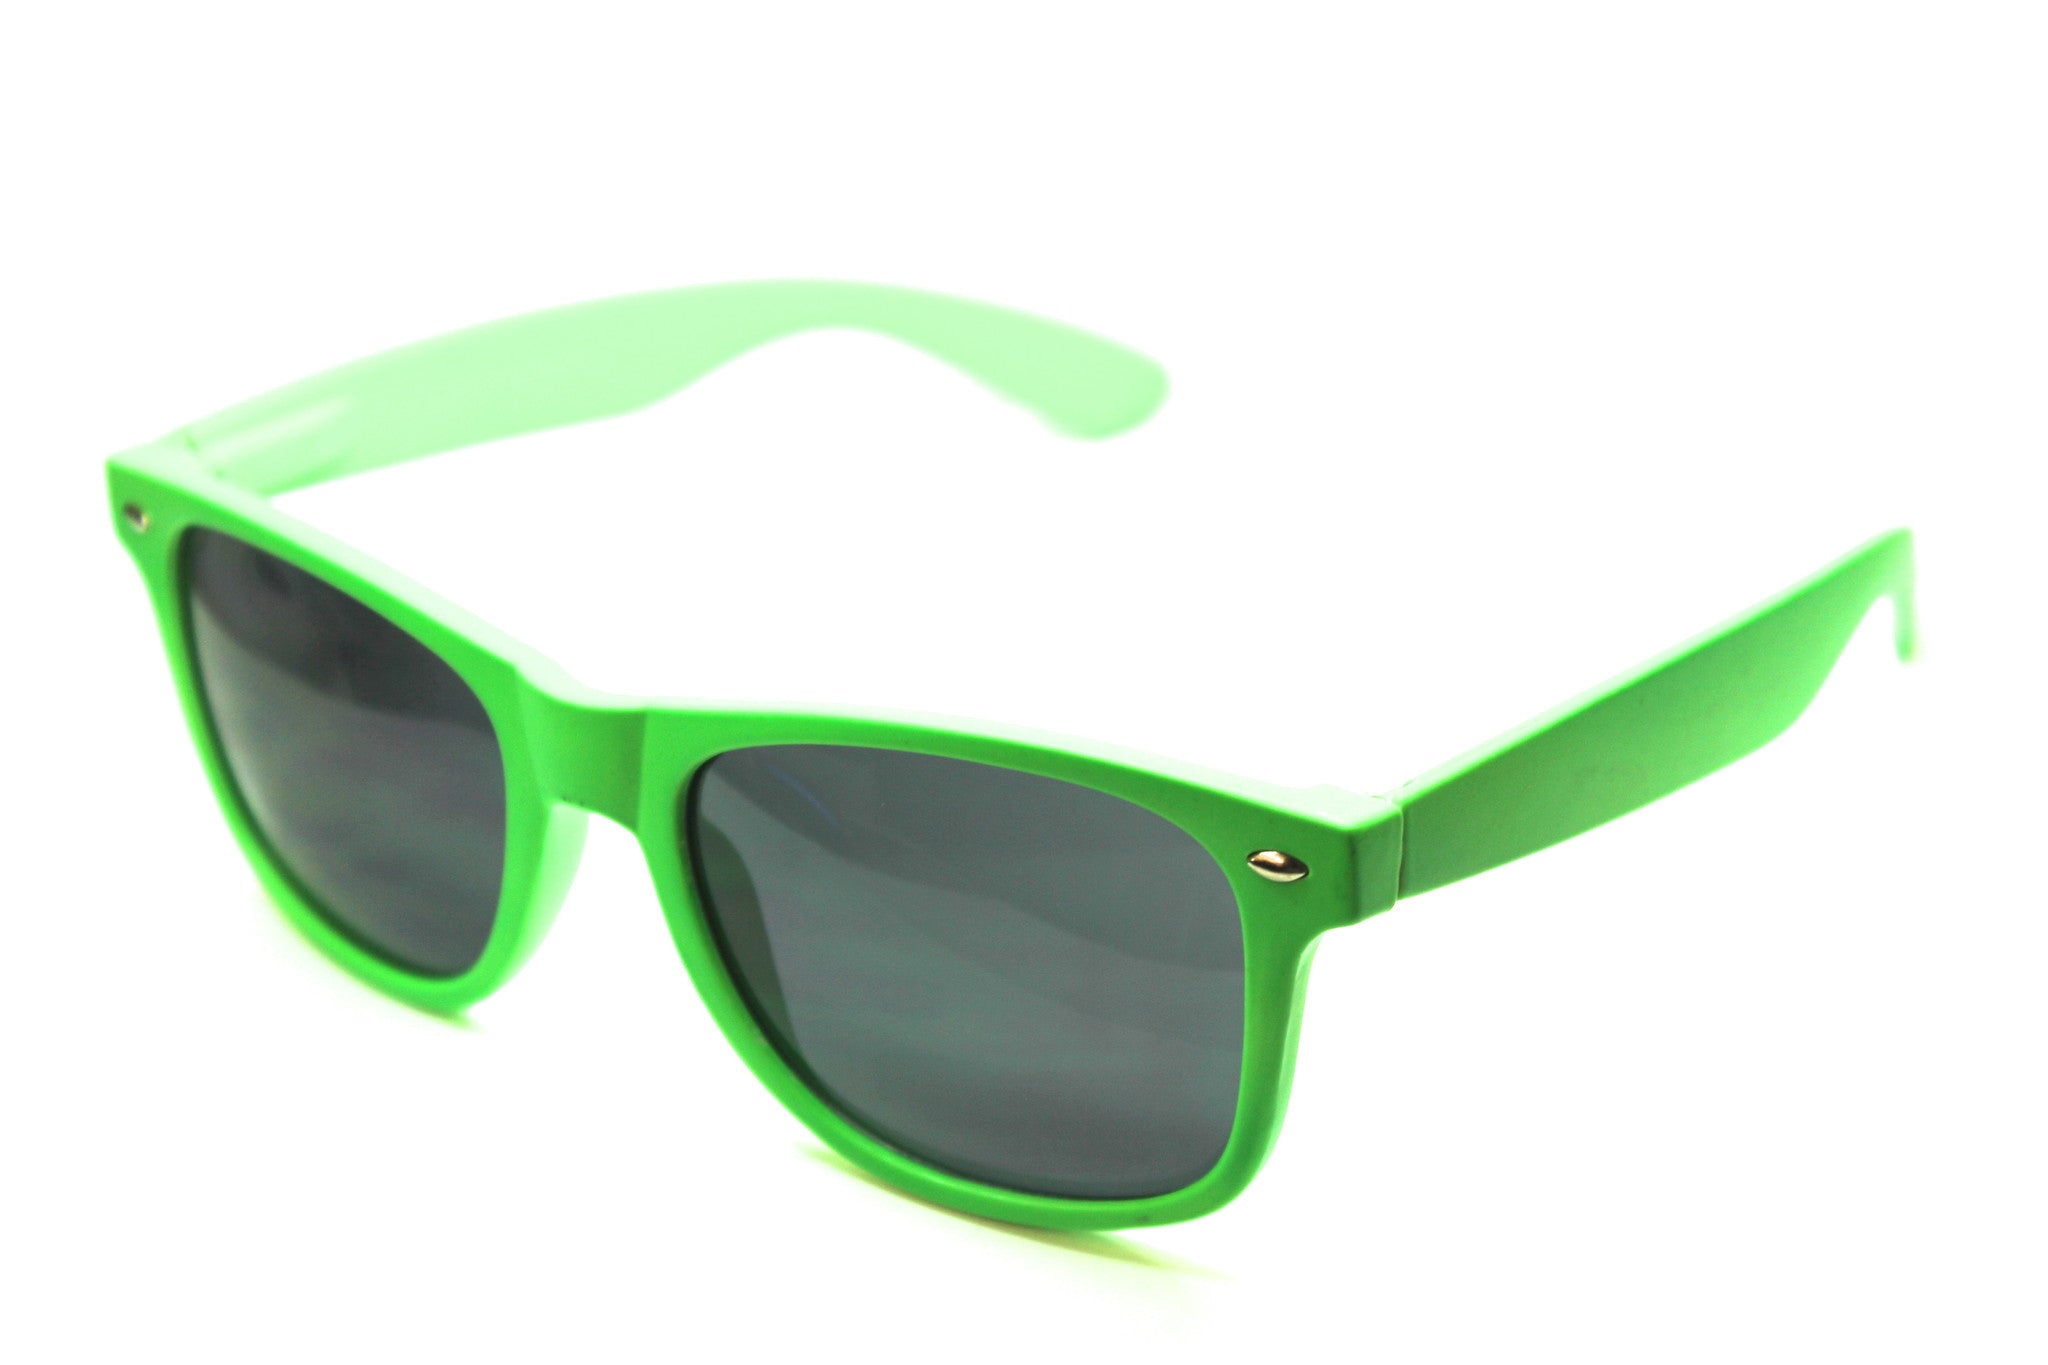 Wayfarer Sunglasses Neon Green With Matte Finish 54mm Eyeglass Discounter 